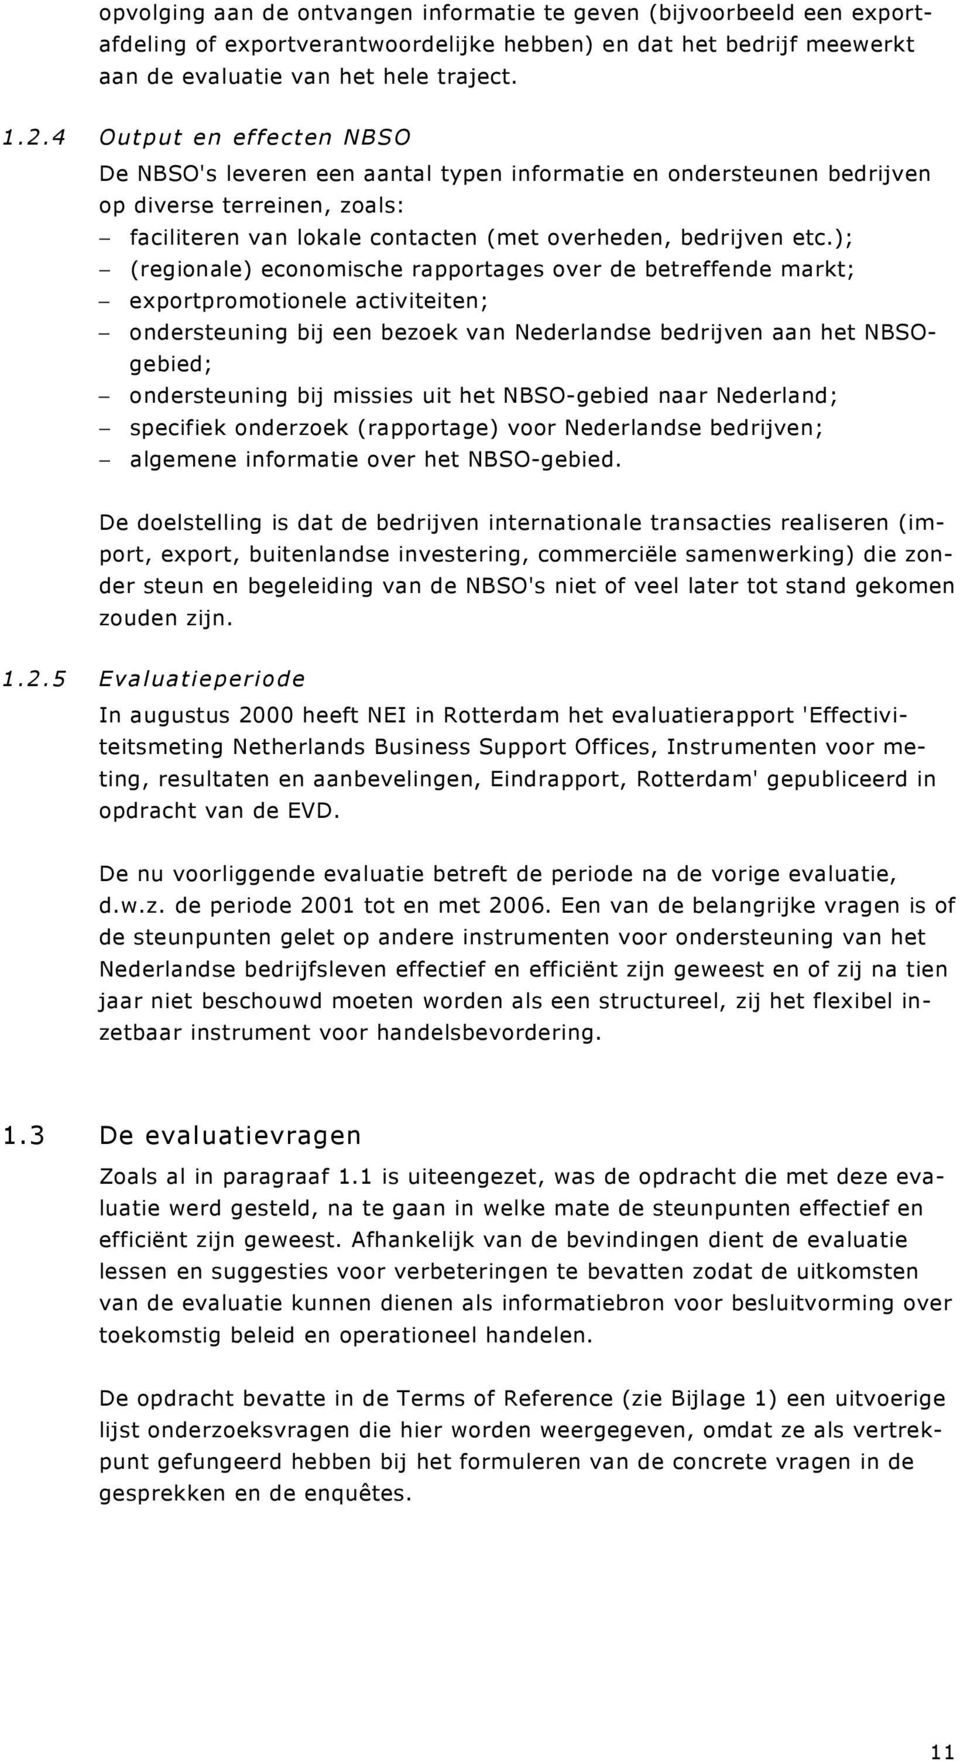 ); (regionale) economische rapportages over de betreffende markt; exportpromotionele activiteiten; ondersteuning bij een bezoek van Nederlandse bedrijven aan het NBSOgebied; ondersteuning bij missies